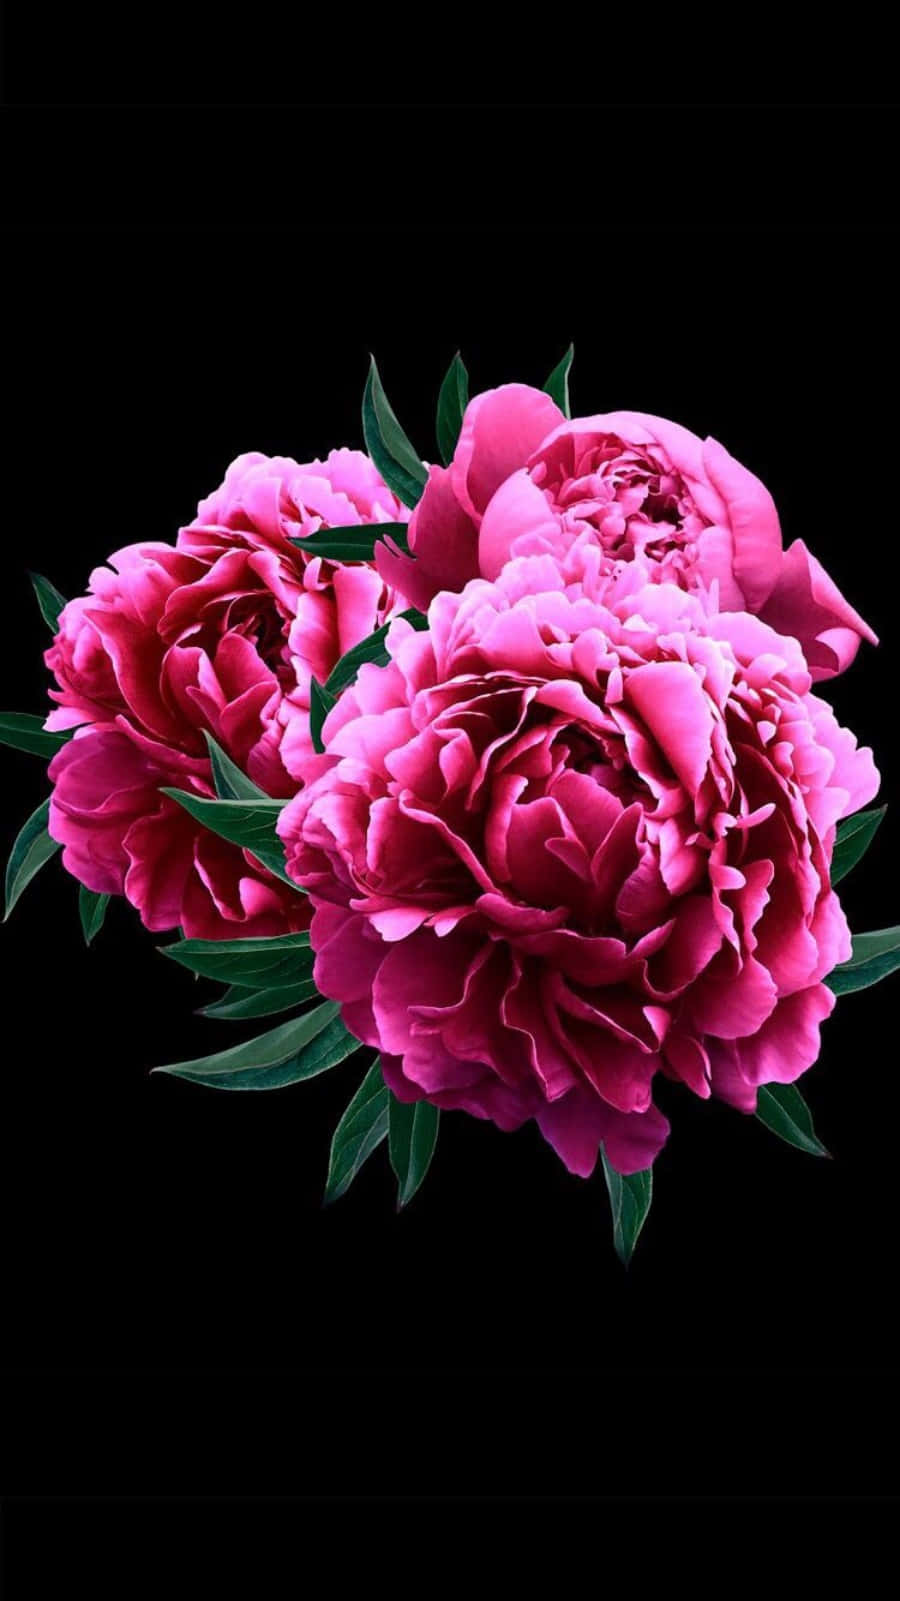 Nyd det skønne blomstrer af lyserøde pæon blomster med de levende farver fra din iPhone. Wallpaper